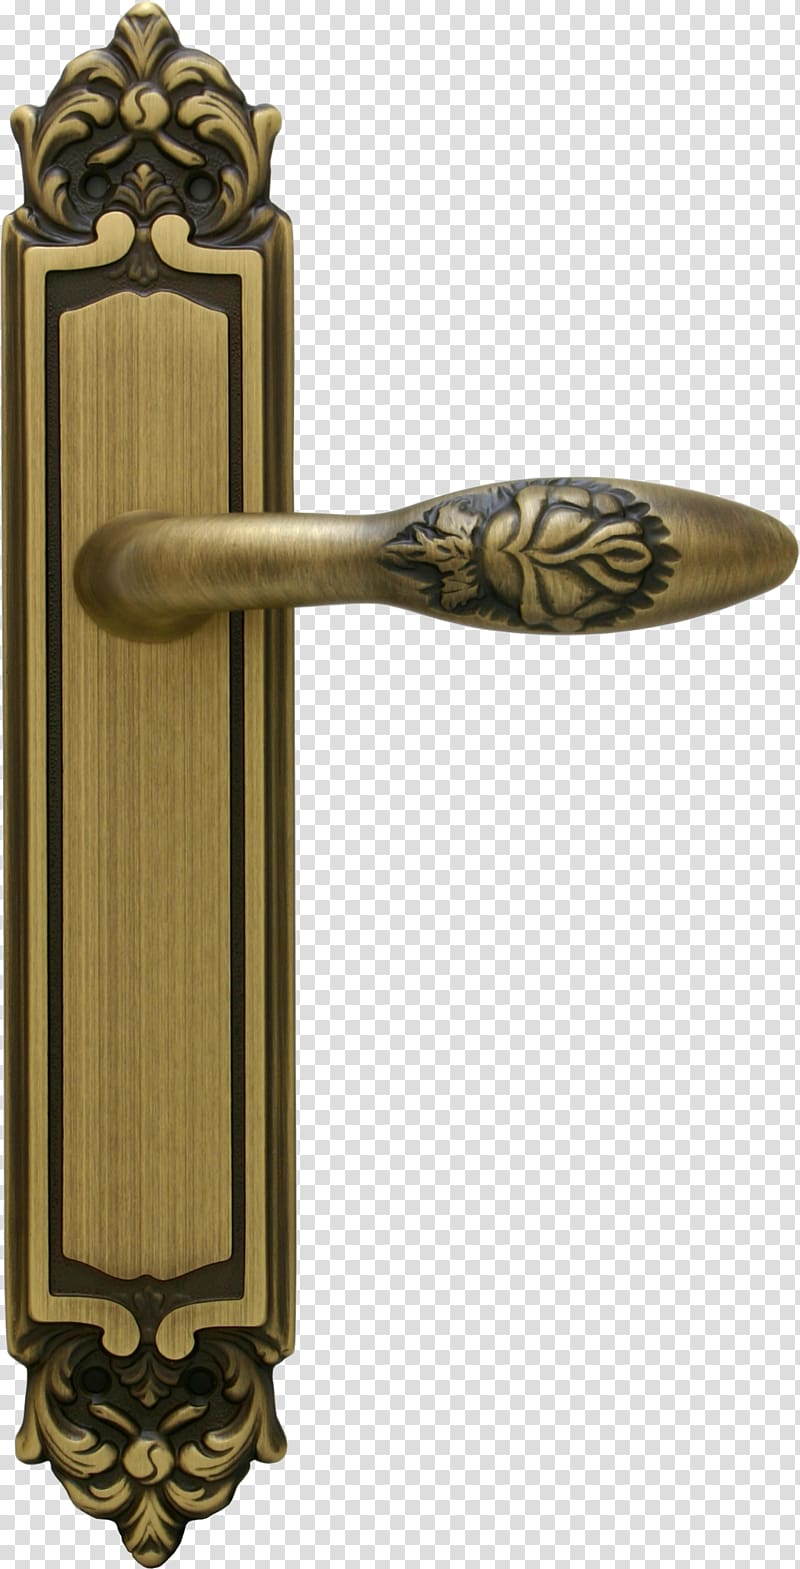 Brass Italy Door handle Door furniture, Brass transparent background PNG clipart